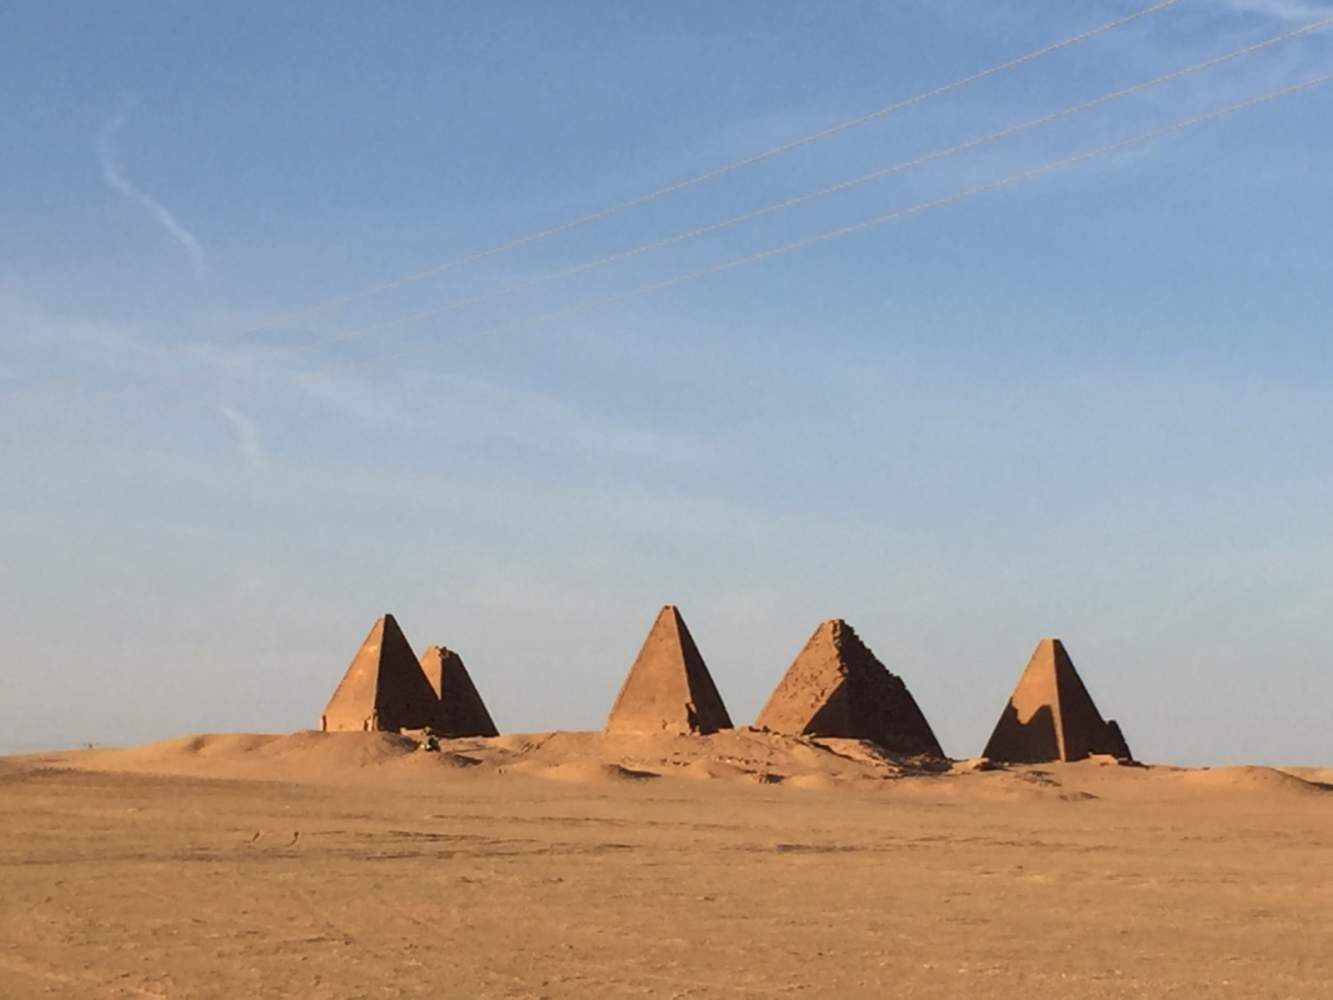 Während unserer Motorradreise besichtigen wir die nubischen Pyramiden im Sudan